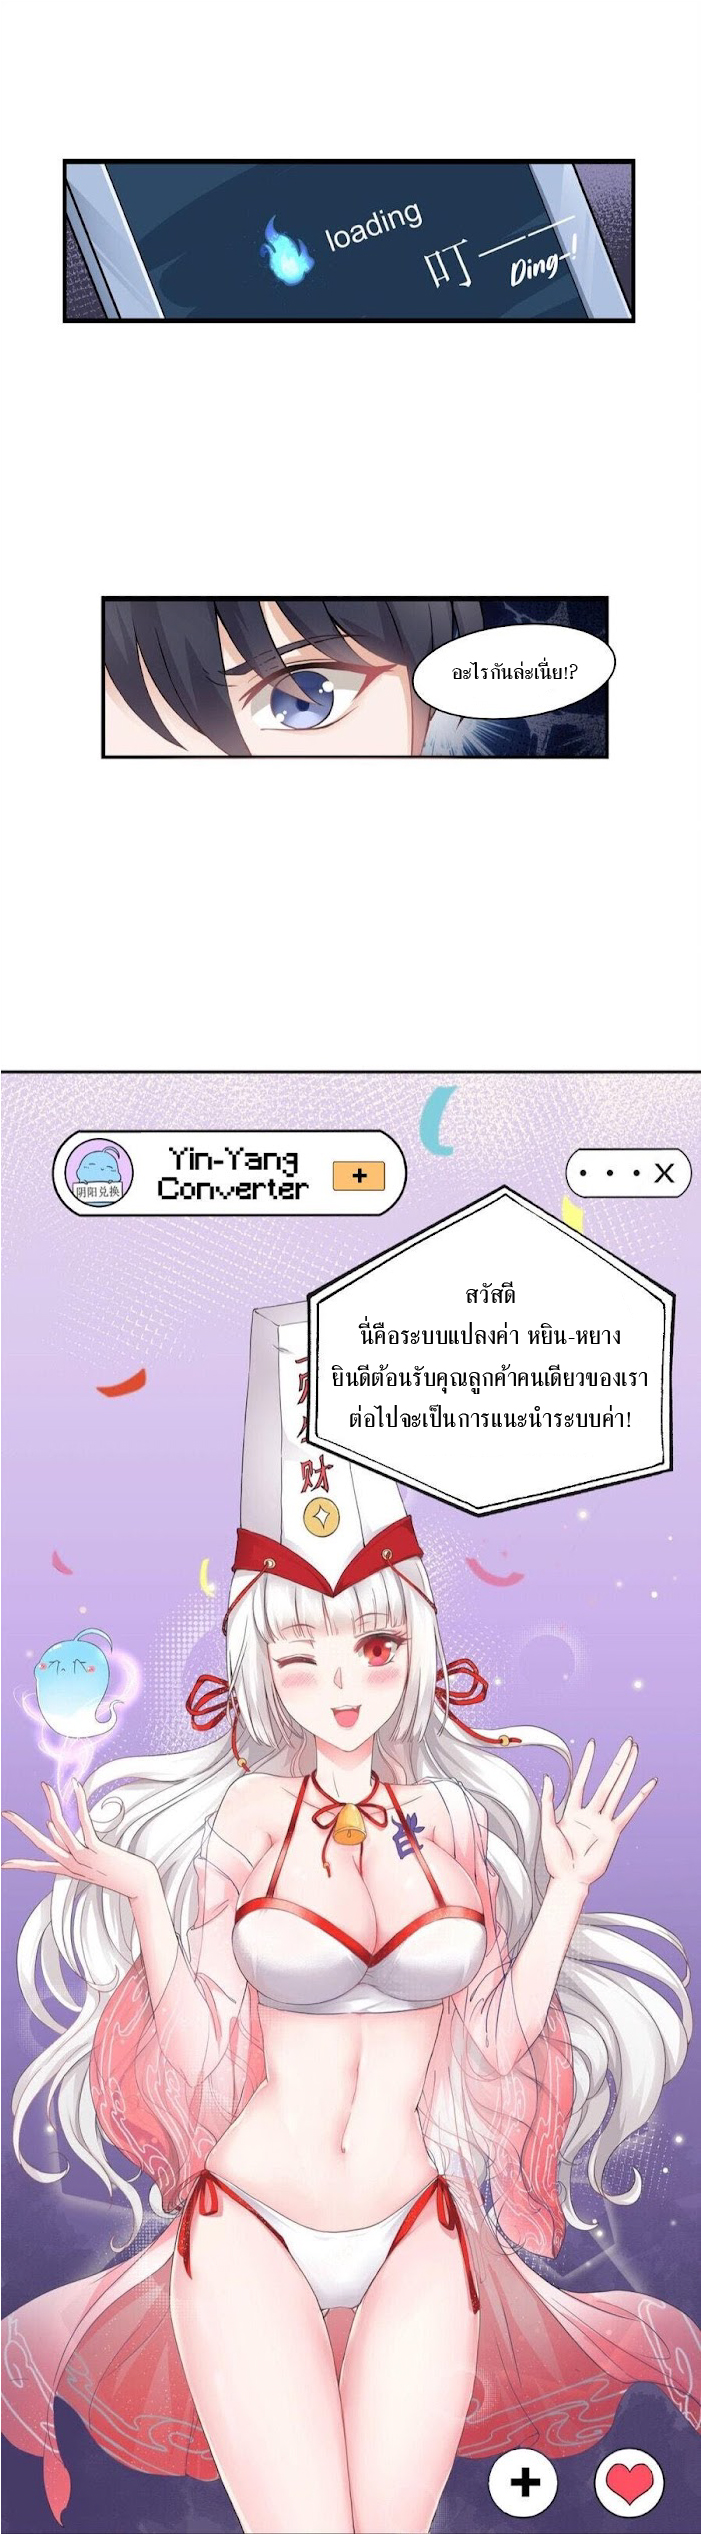 Yin Yang Converting Merchan 1 (9)